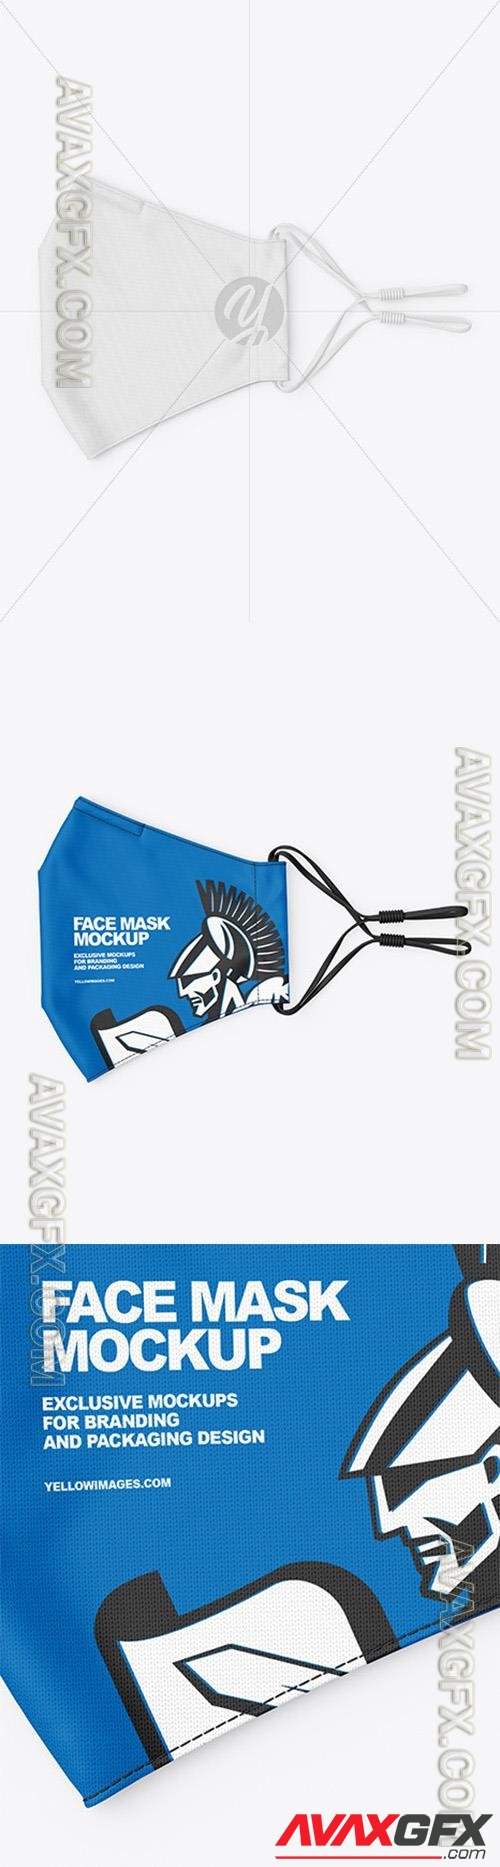 Folded Face Mask Mockup 74064